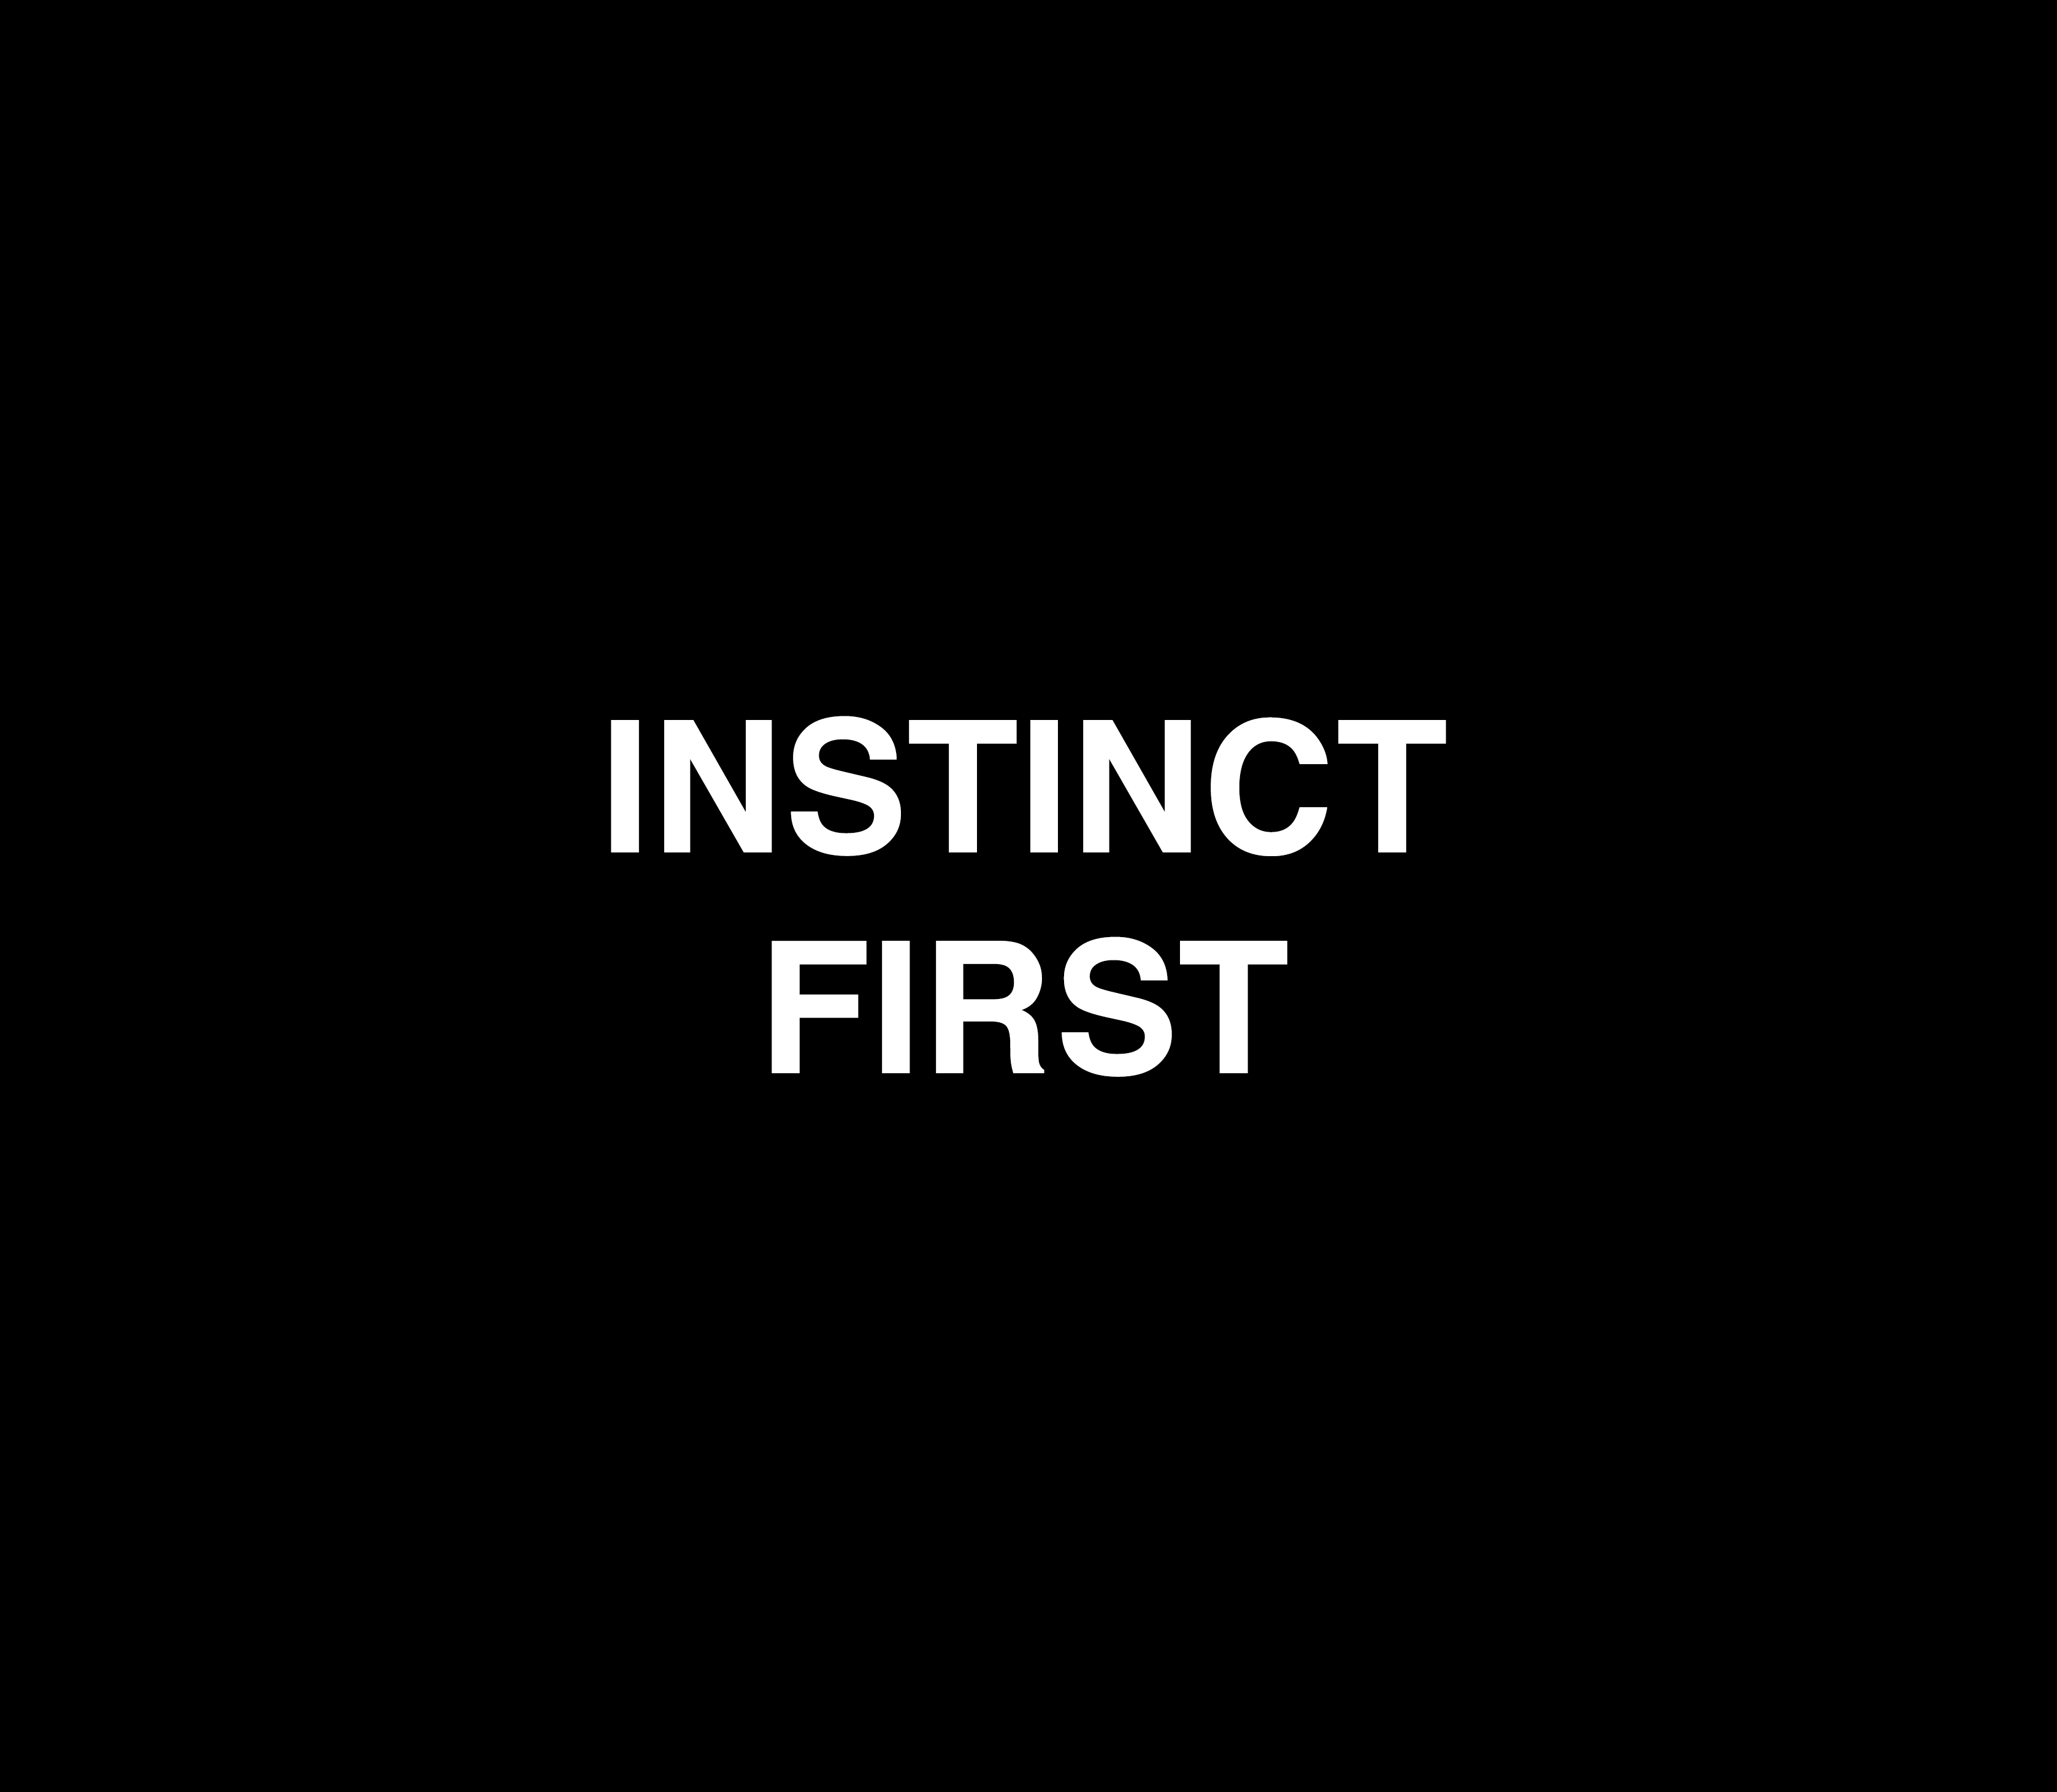 INSTINCT FIRST